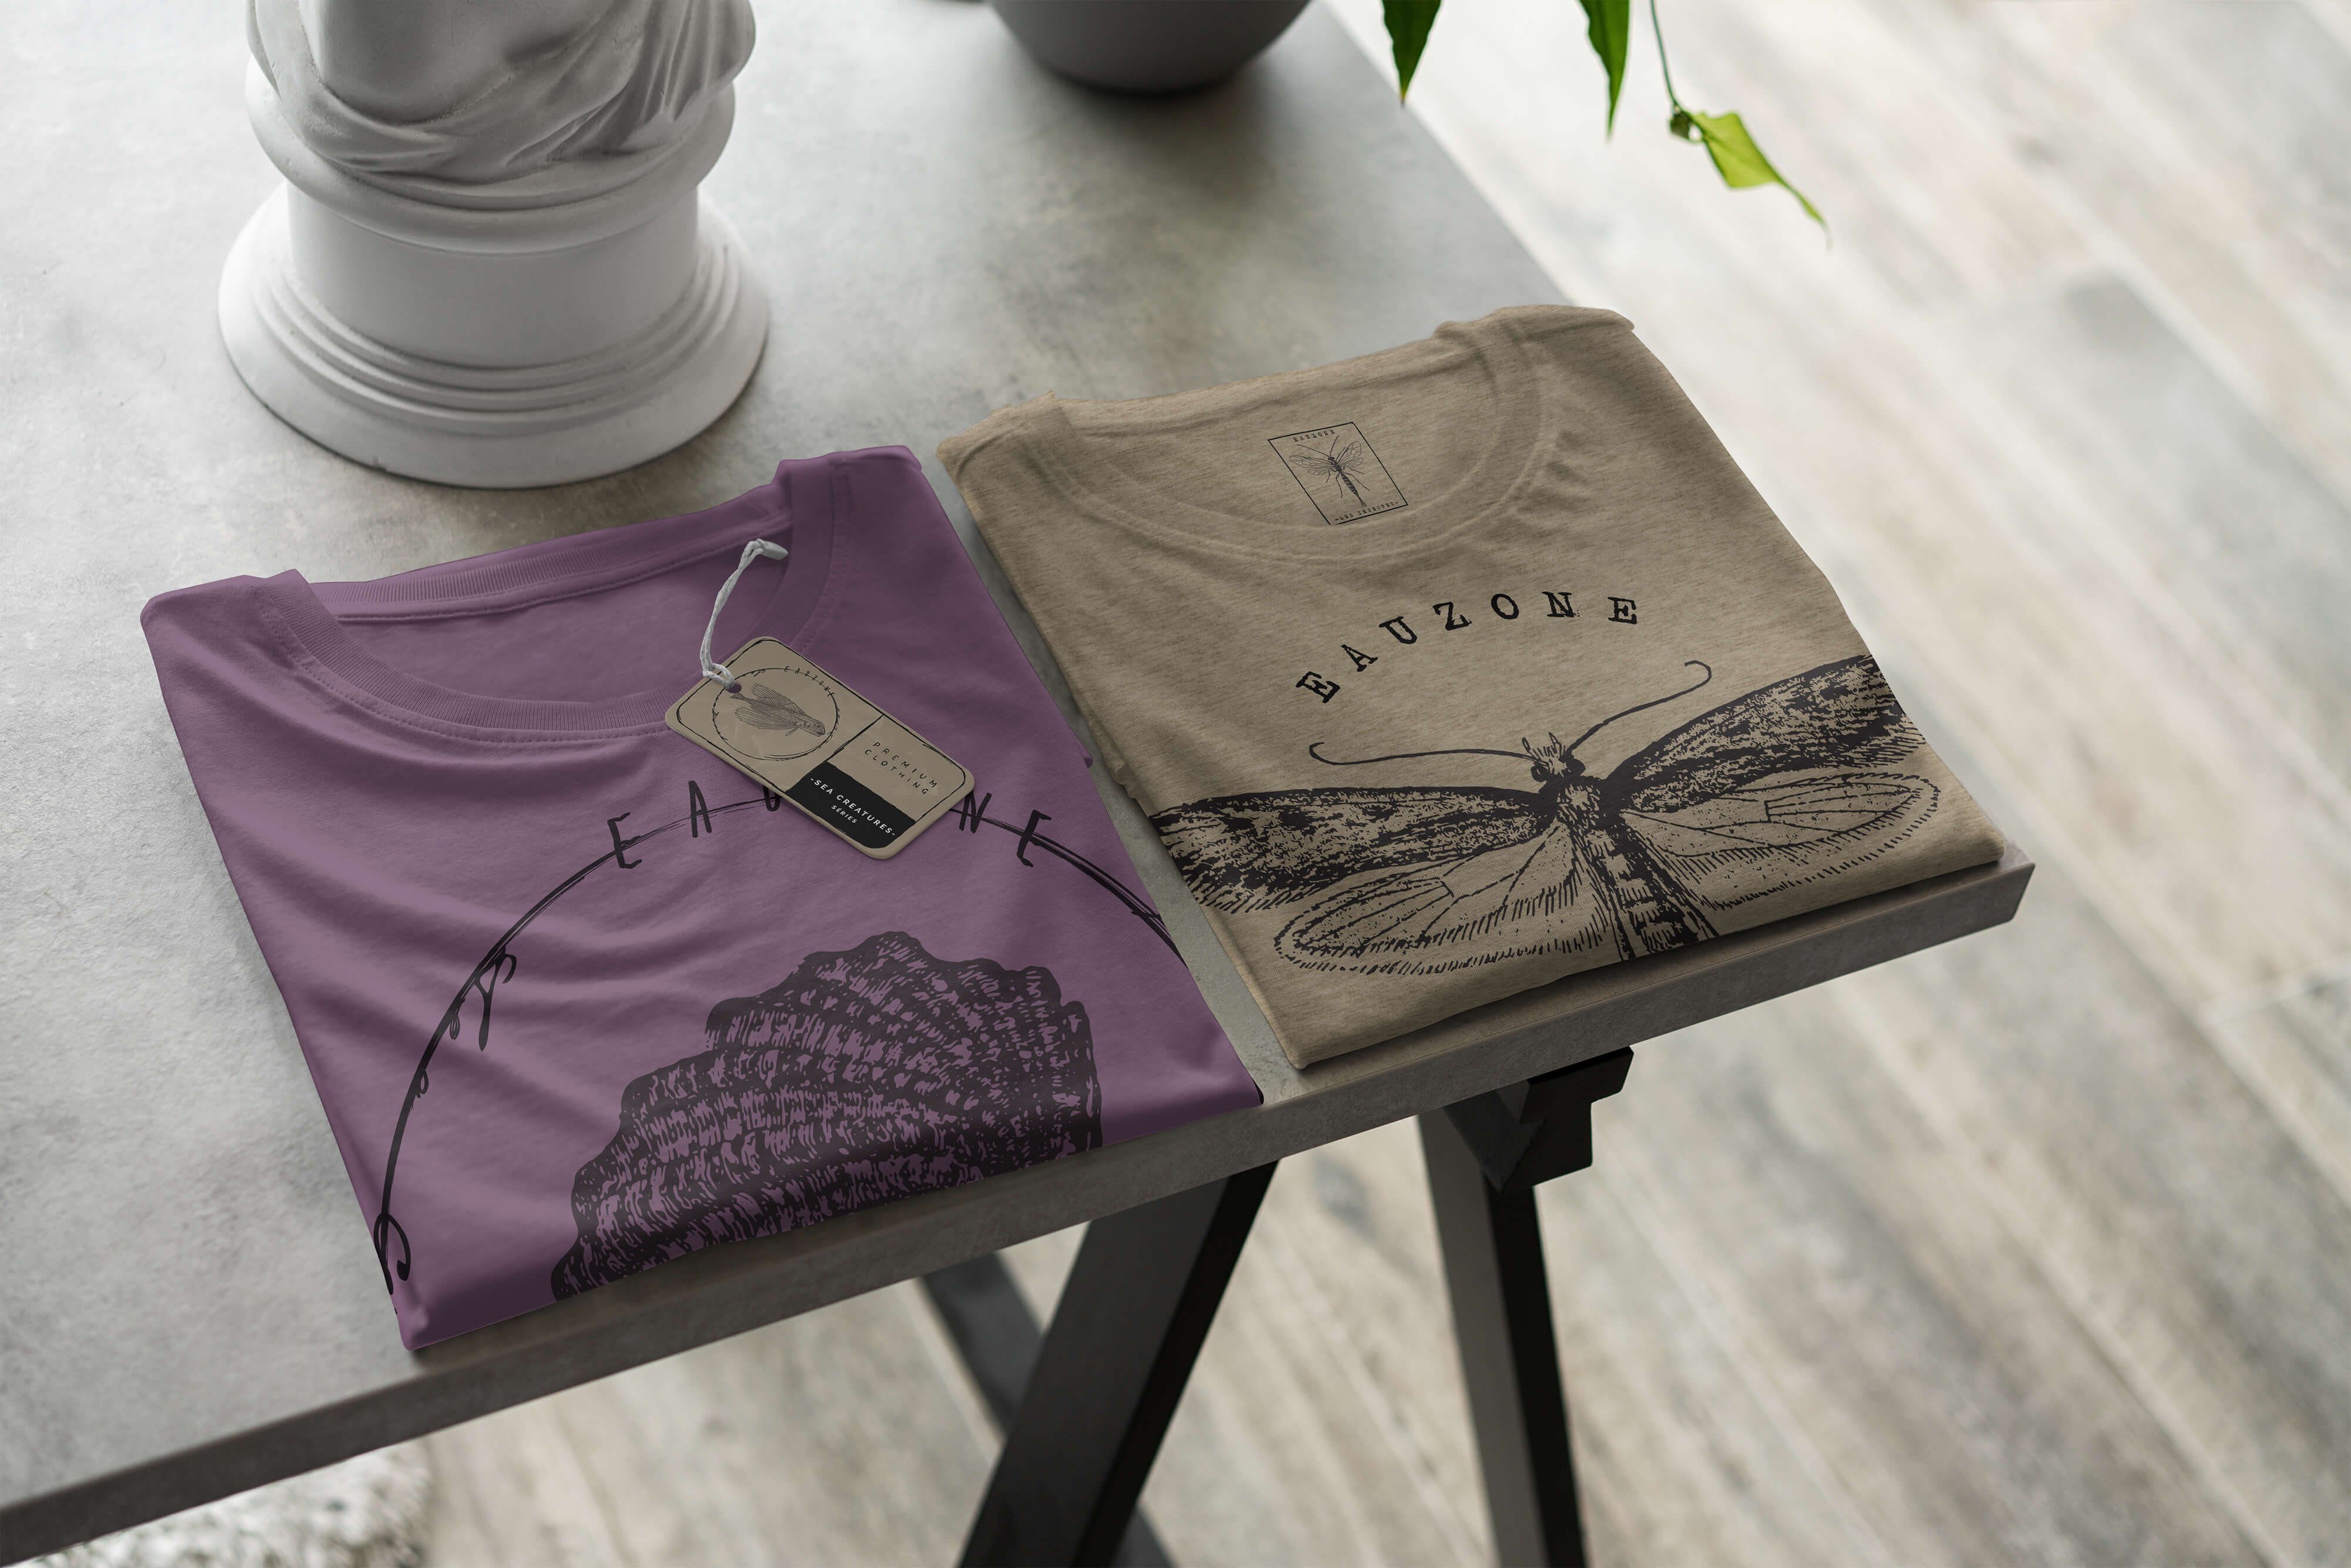 Sinus Art Creatures, Sea Serie: Fische und / Schnitt Tiefsee Sea T-Shirt 067 T-Shirt sportlicher Shiraz Struktur - feine